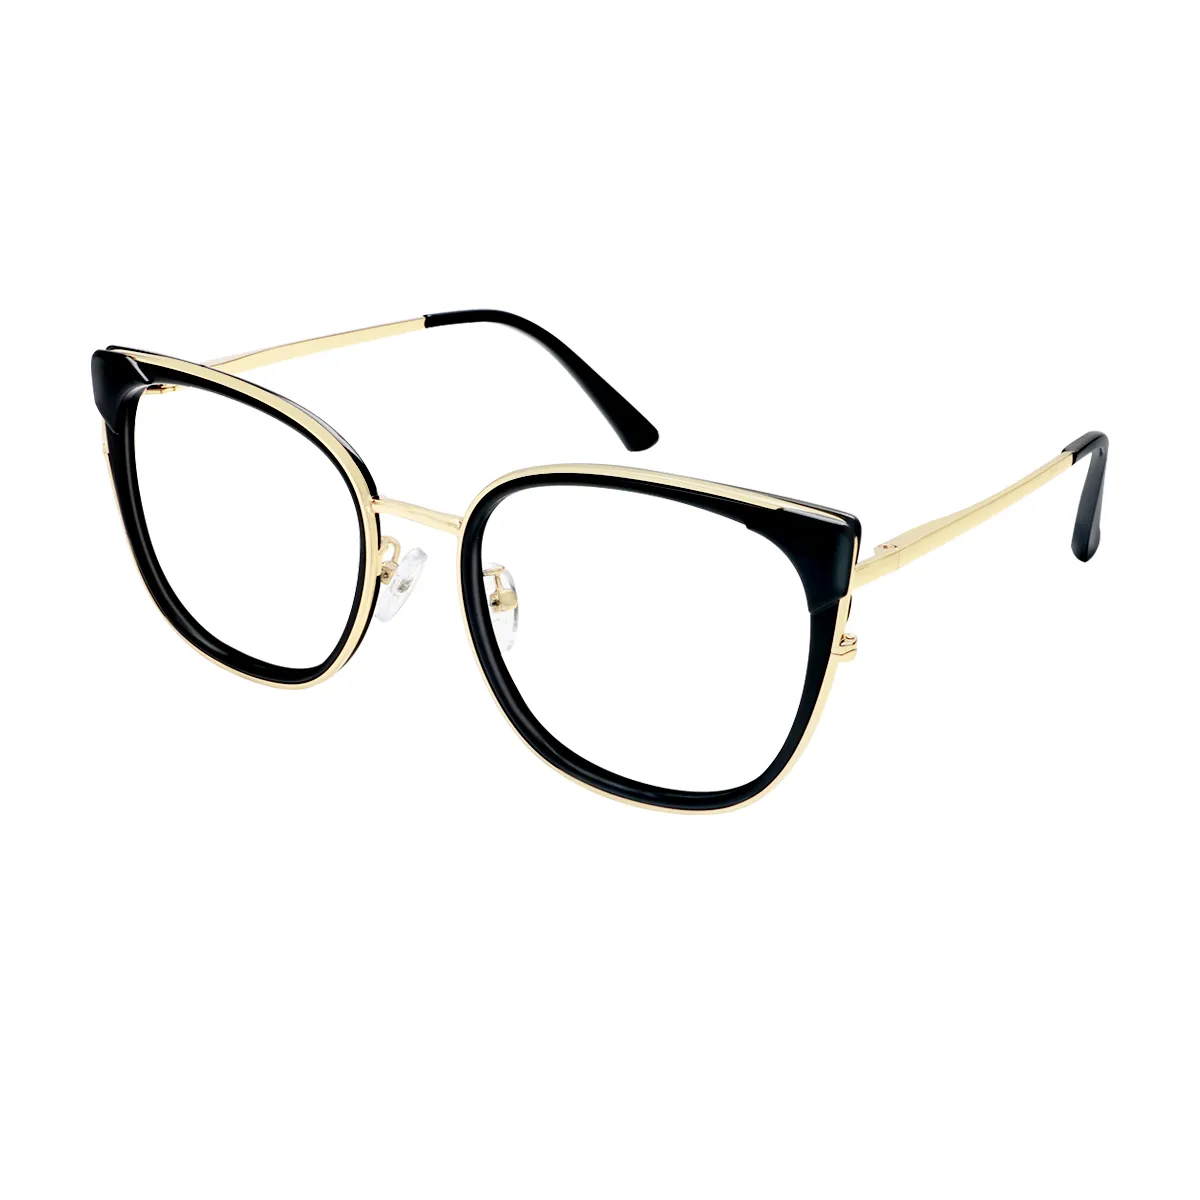 Grace - Square Black-Gold Glasses for Women